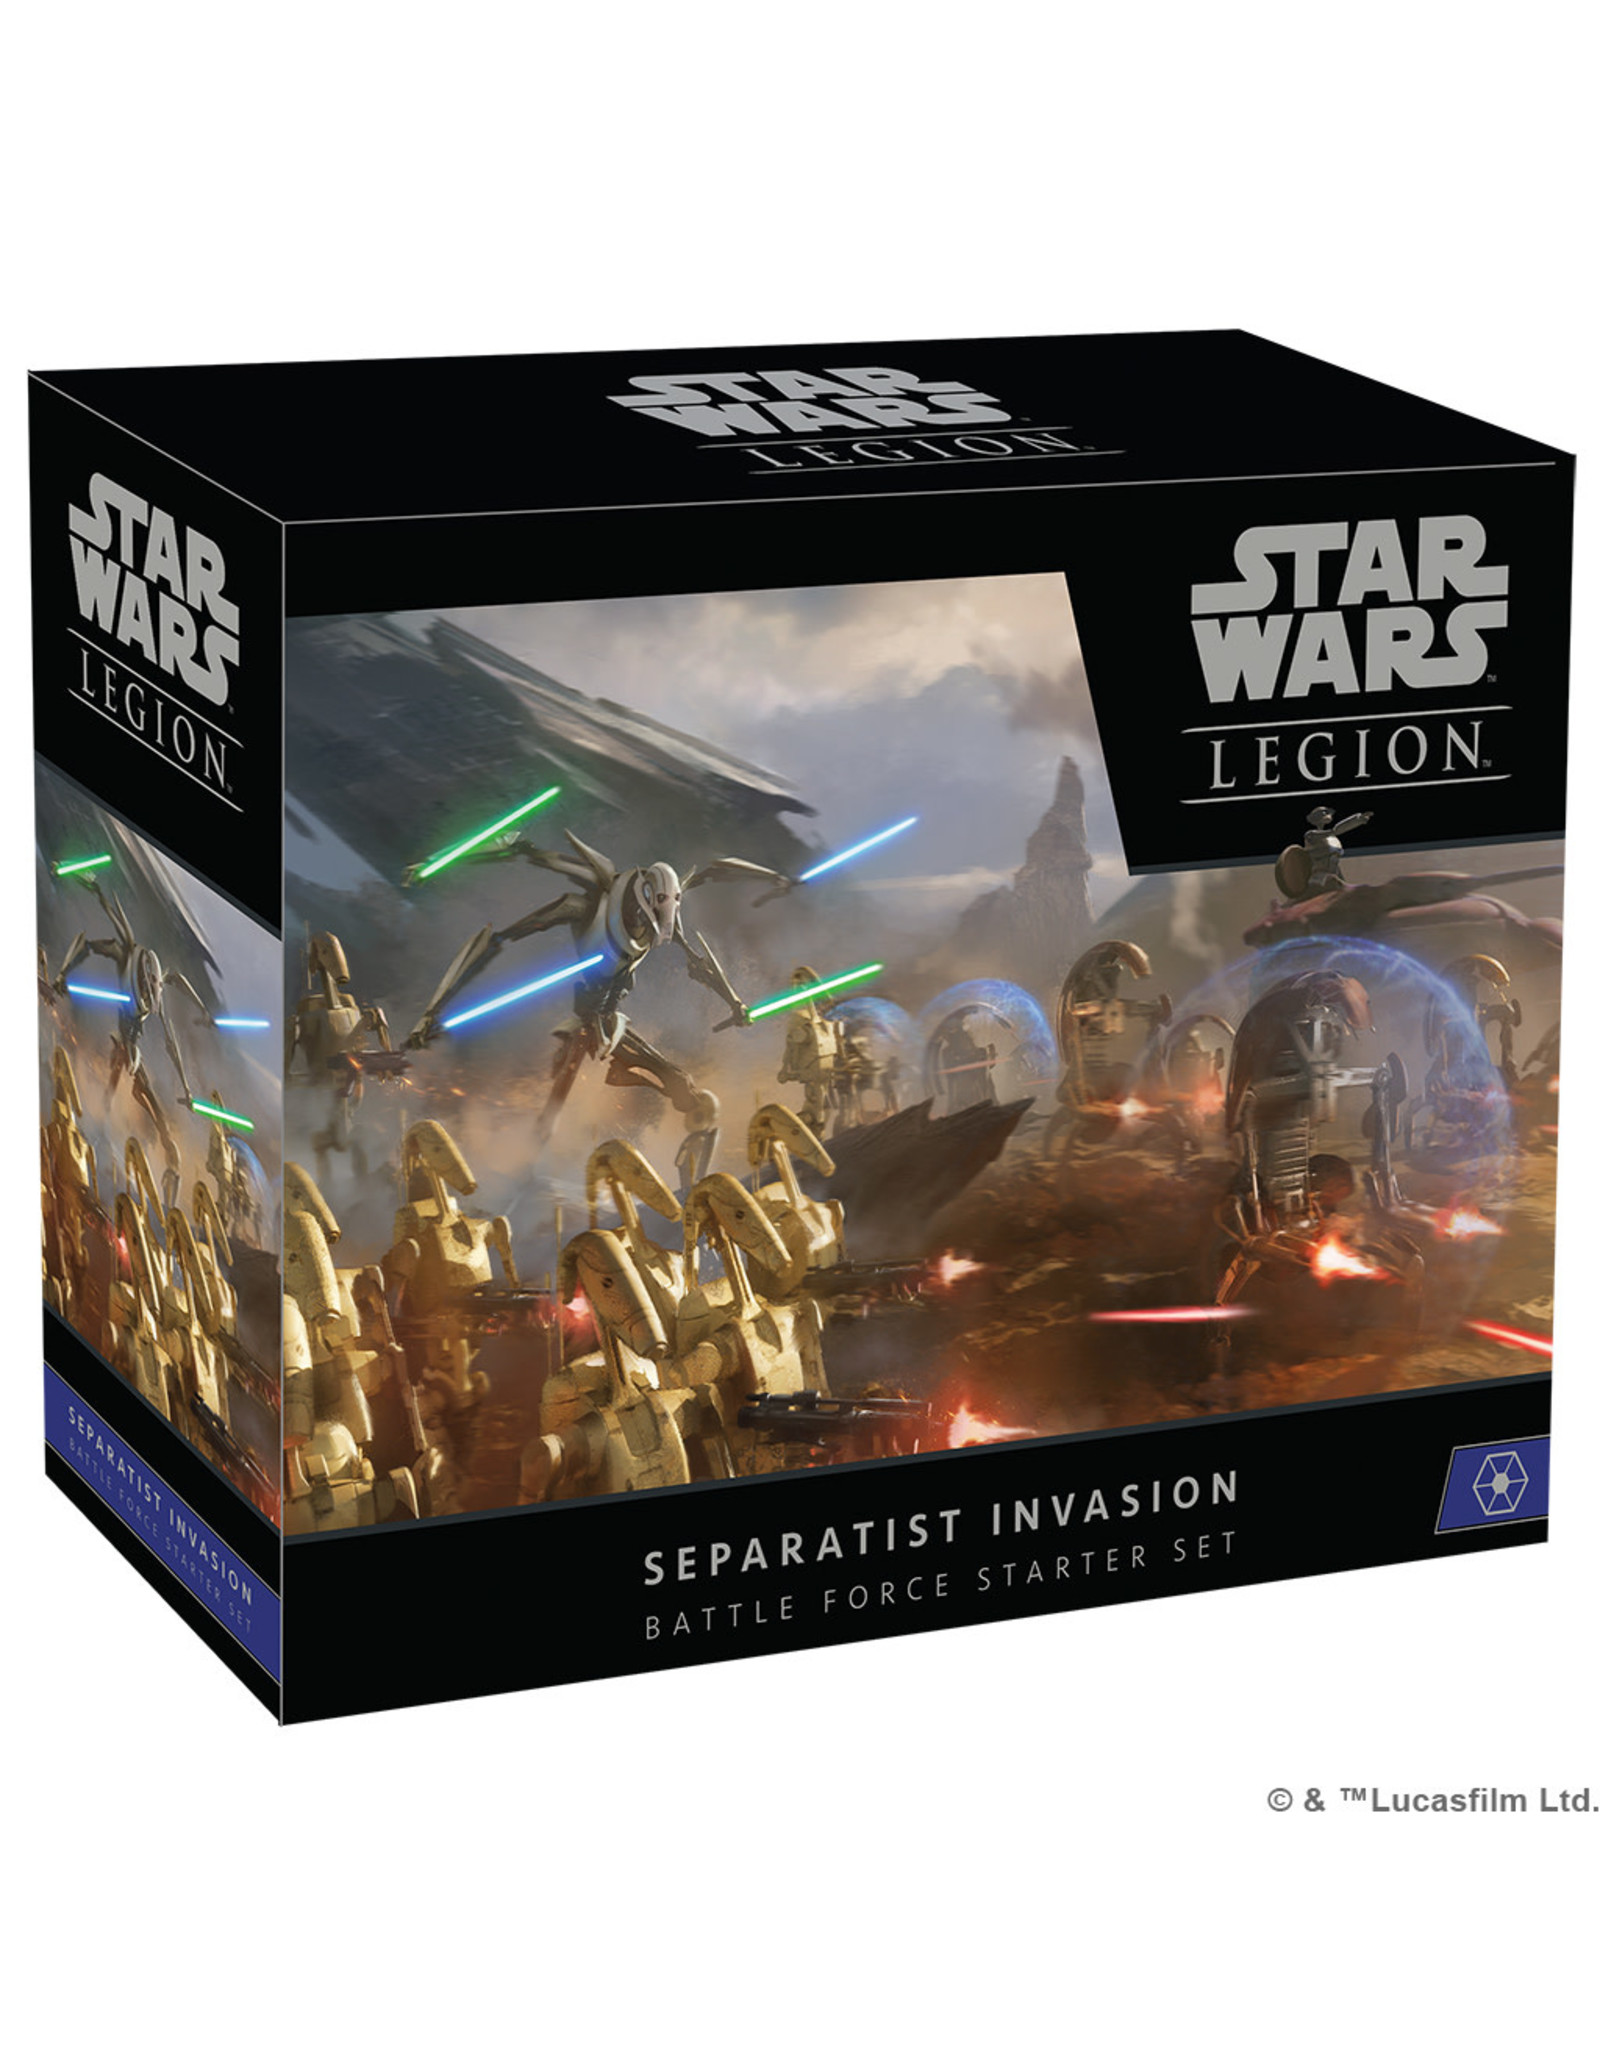 STAR WARS LEGION Star Wars Legion Separatist Invasion Battle Force Starter Set